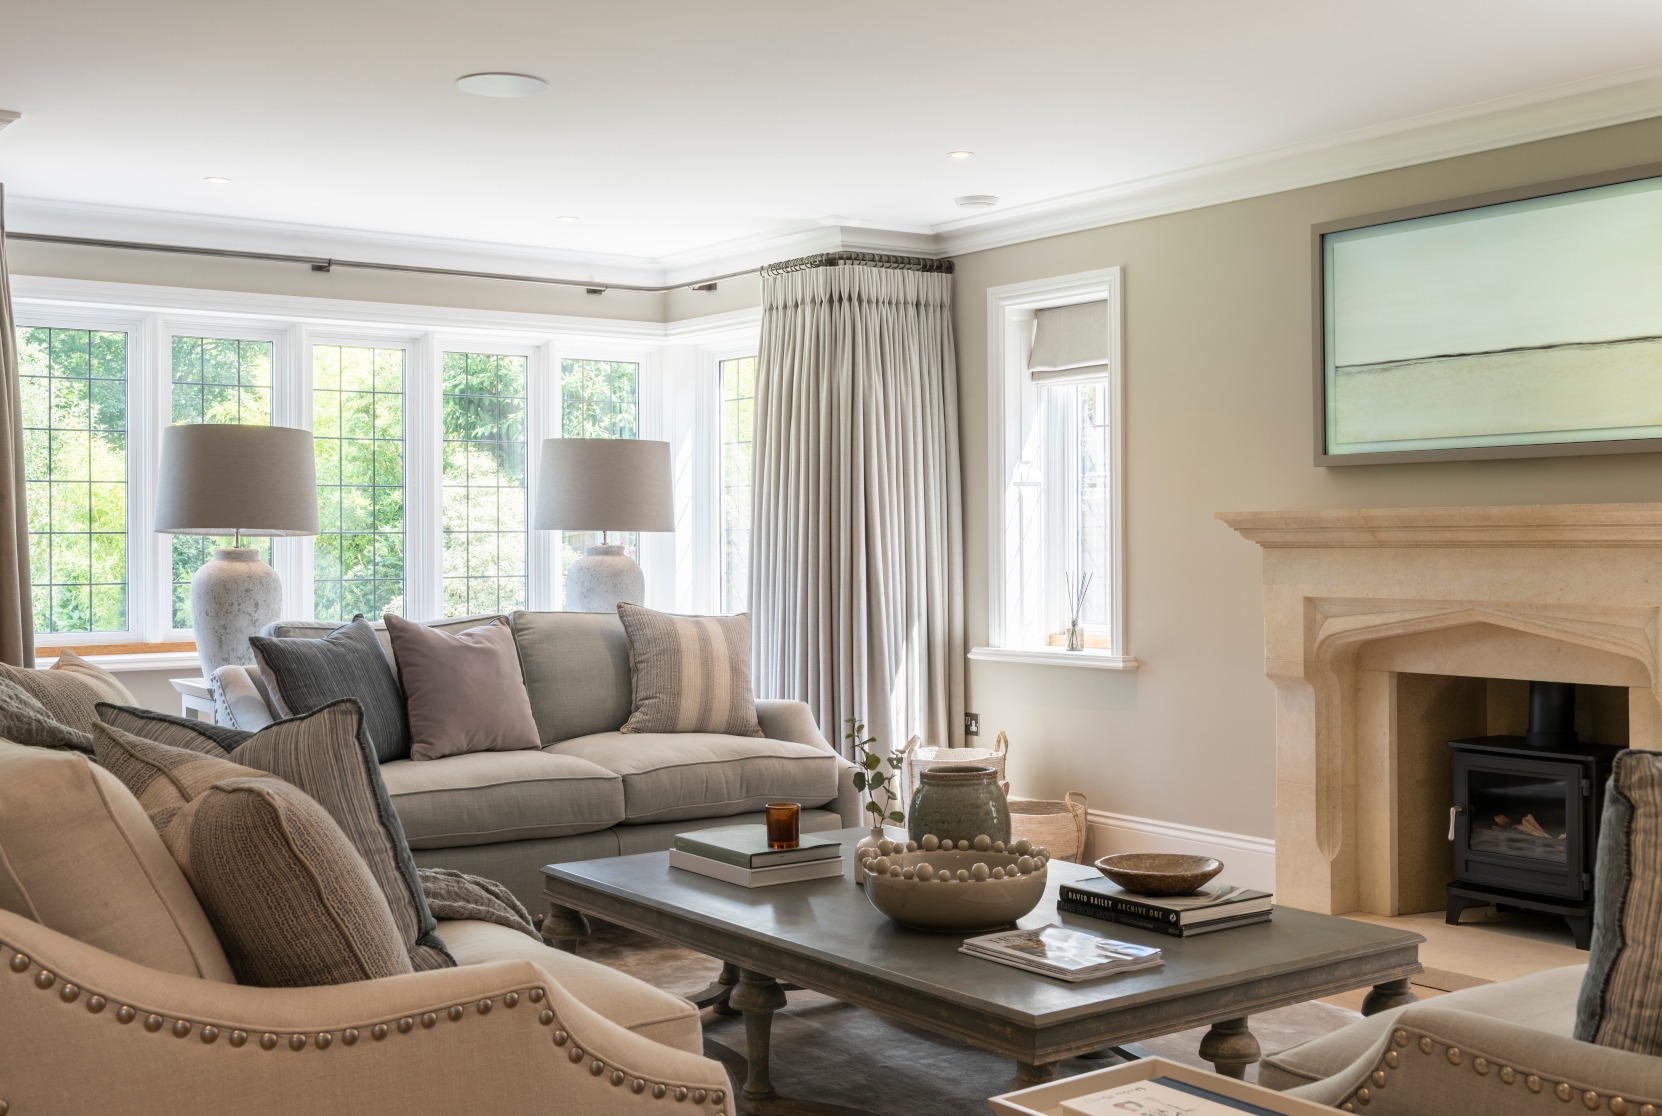 Living Room Interior Design - Claire Garner Interiors